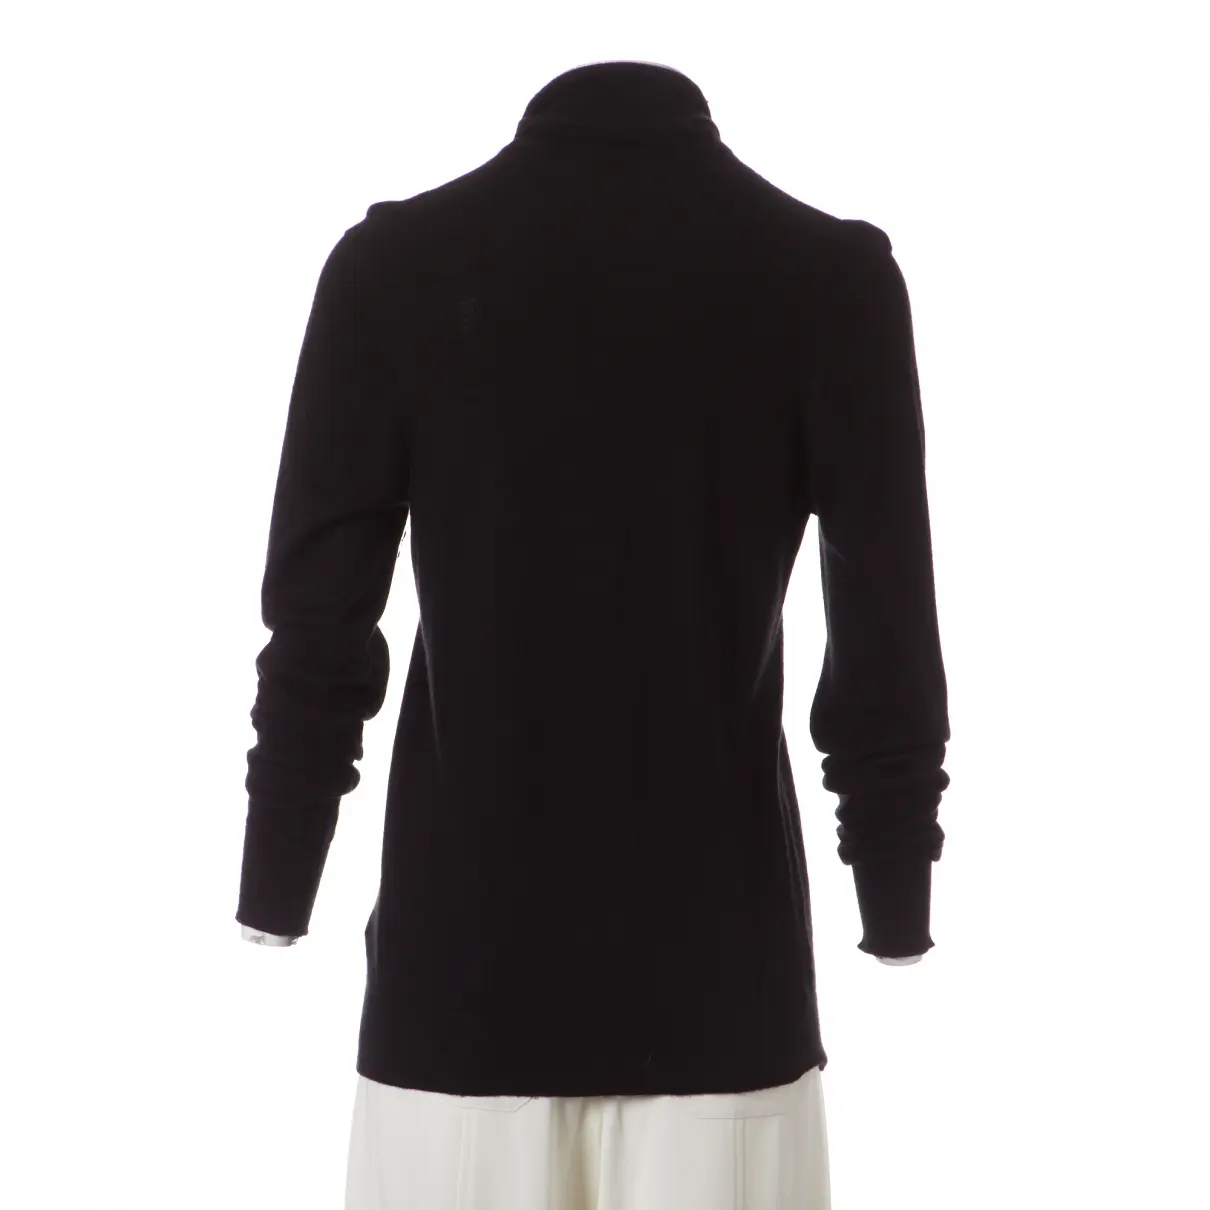 Buy Dior Cashmere jumper online